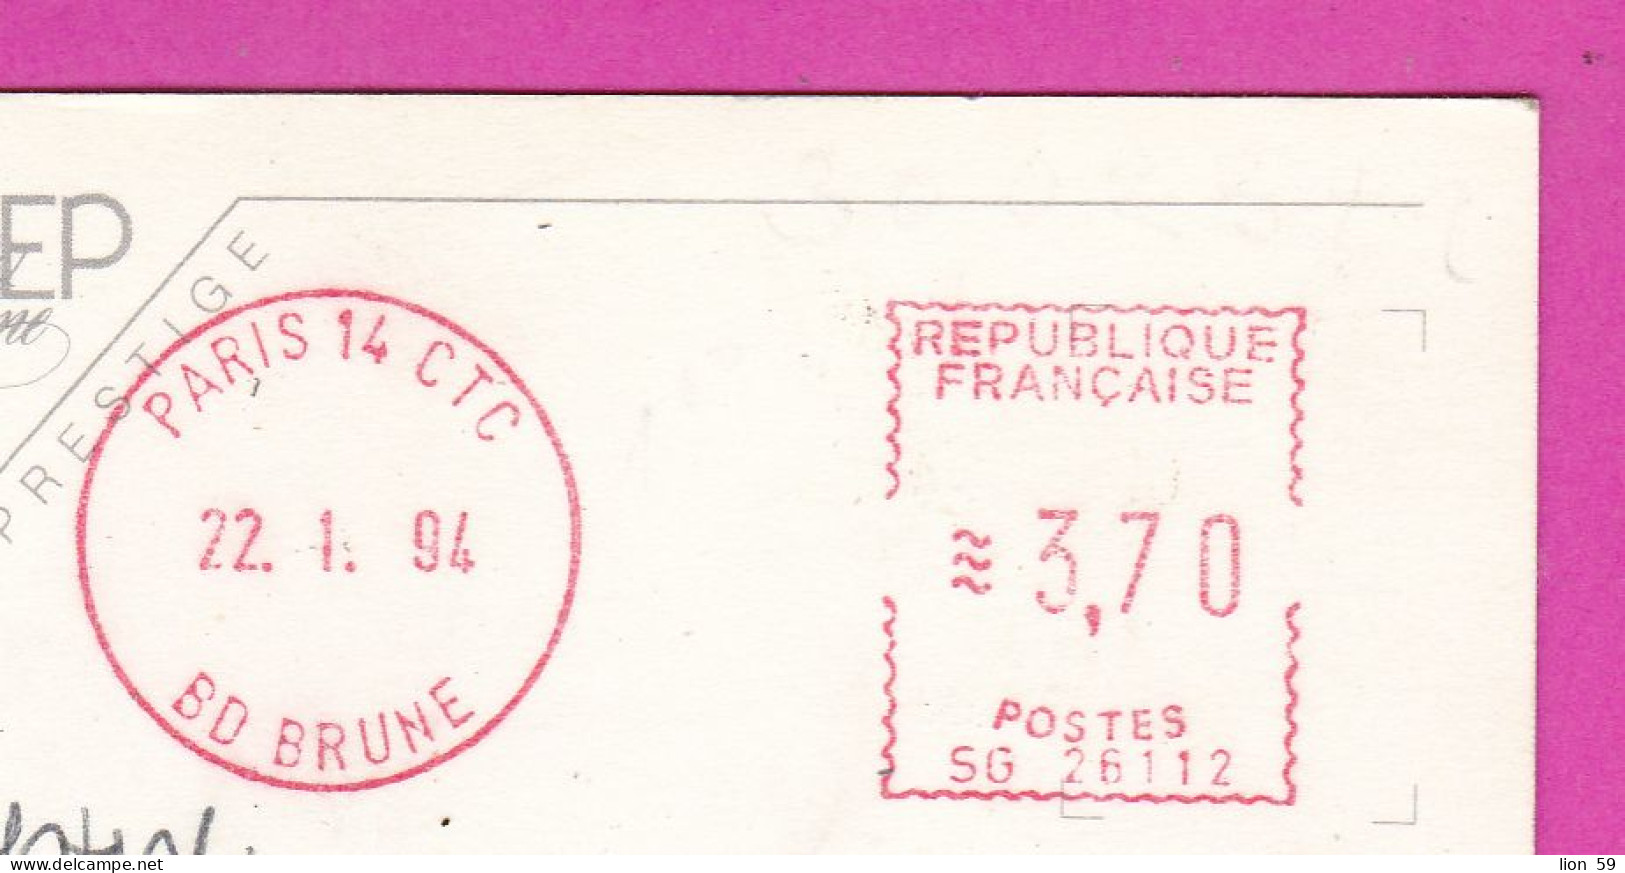 294099 / France - PARIS La Tour Eiffel , Eiffel Tower PC 1964 USED 3.70 - Printer Machine (EMA) Paris 14 CTC Bo Brune - Lettres & Documents